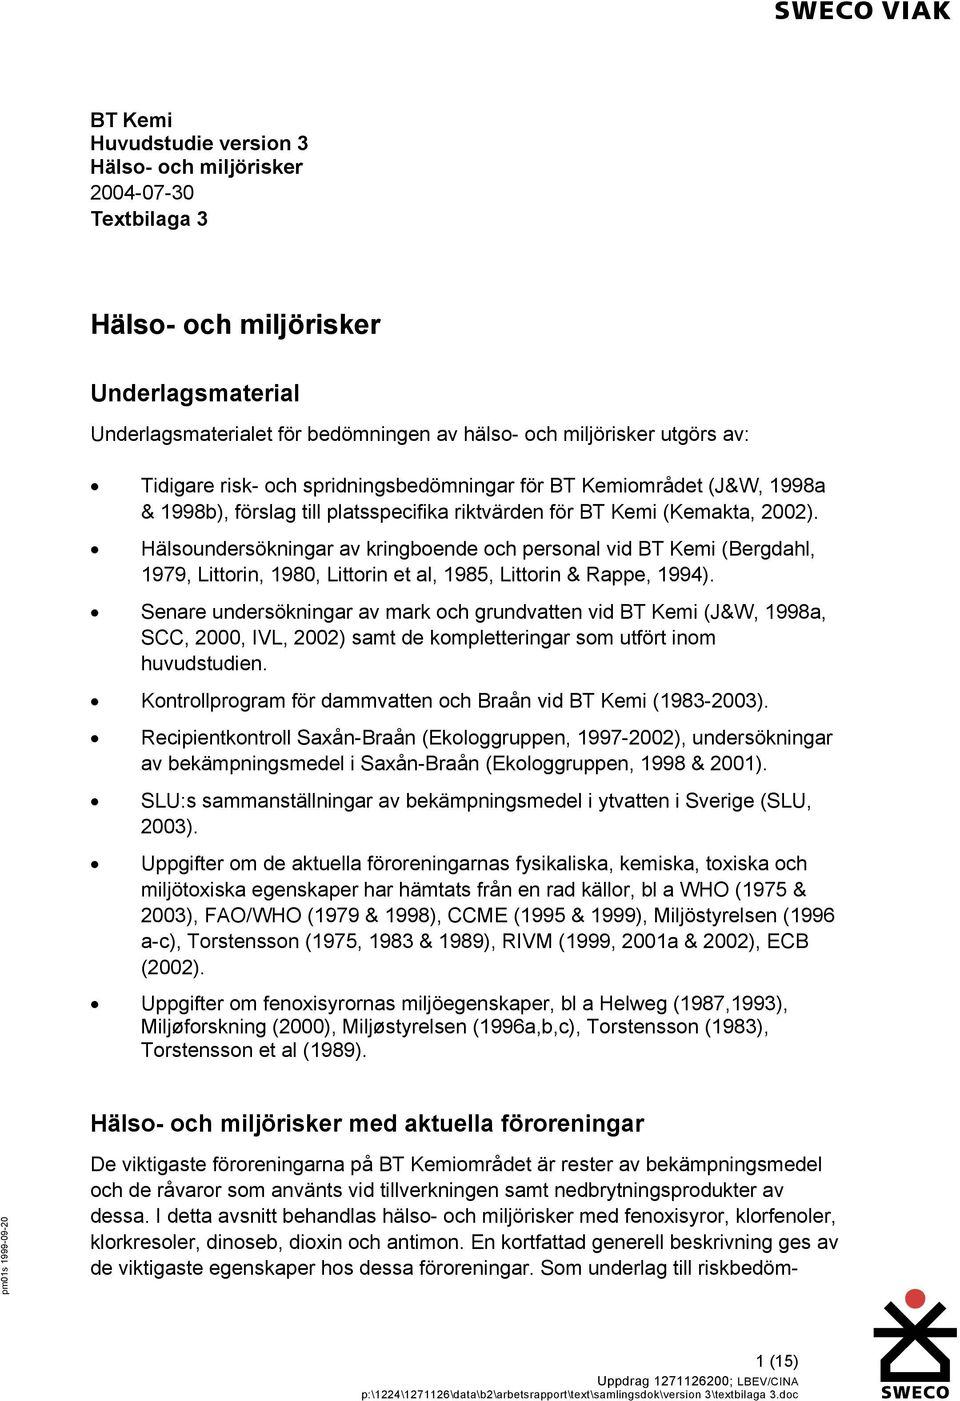 Hälsoundersökningar av kringboende och personal vid (Bergdahl, 1979, Littorin, 1980, Littorin et al, 1985, Littorin & Rappe, 1994).